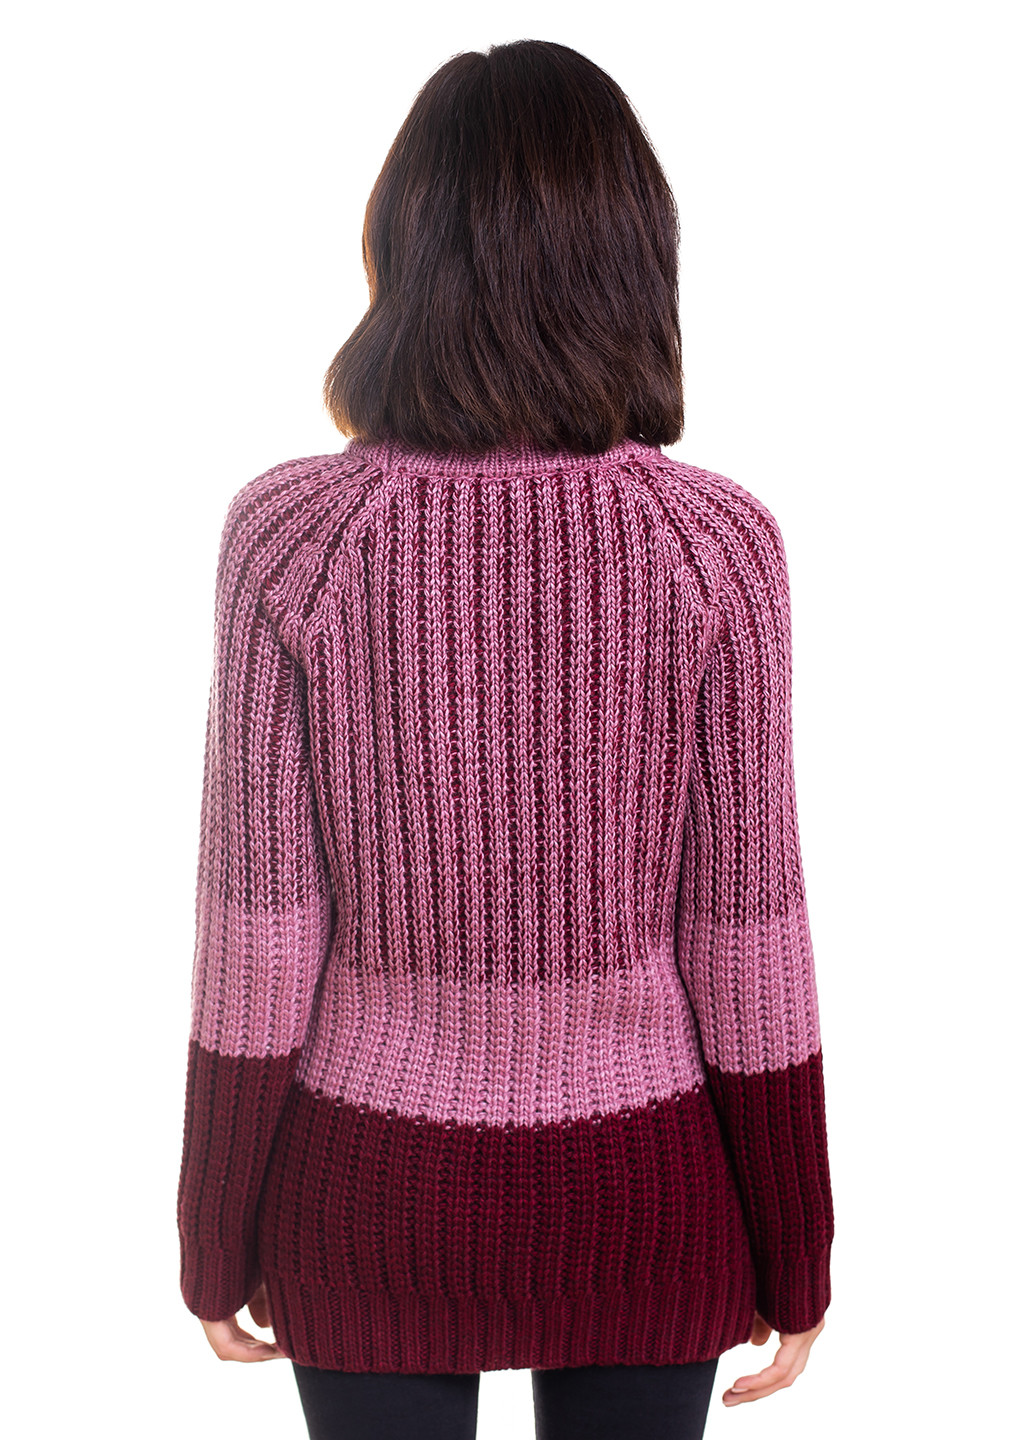 Светло-бордовый зимний свитер Bakhur